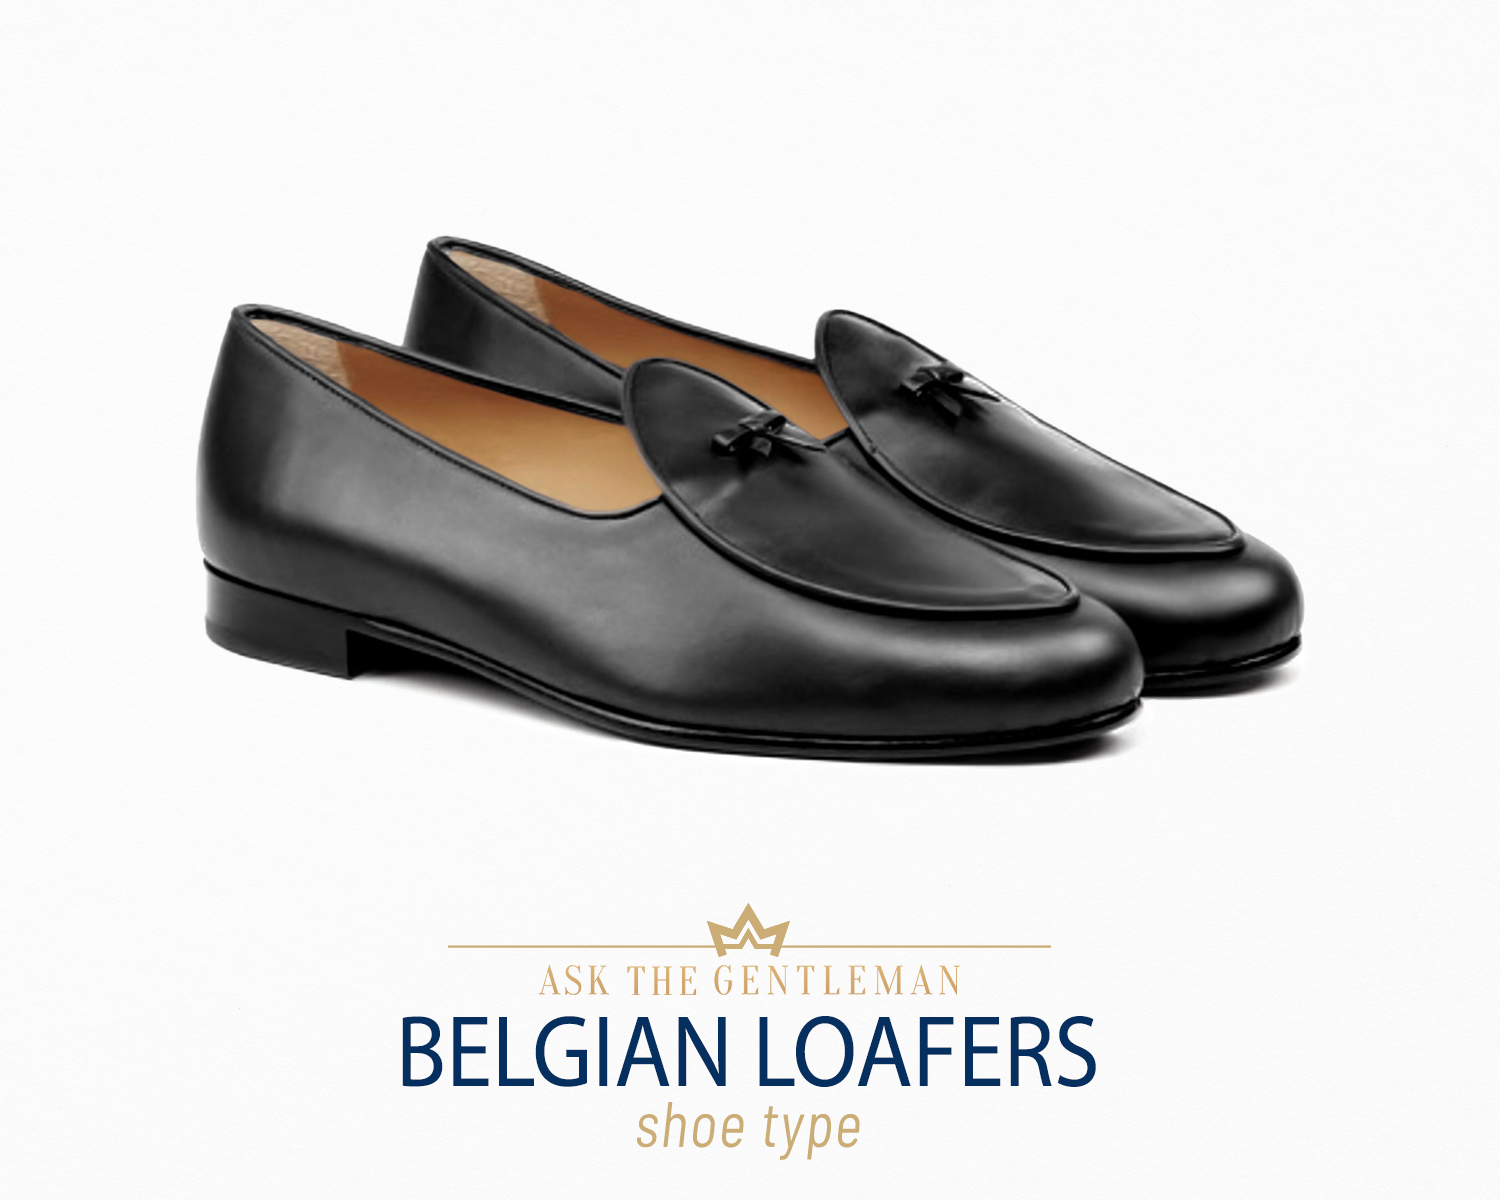 Belgian loafer shoe type